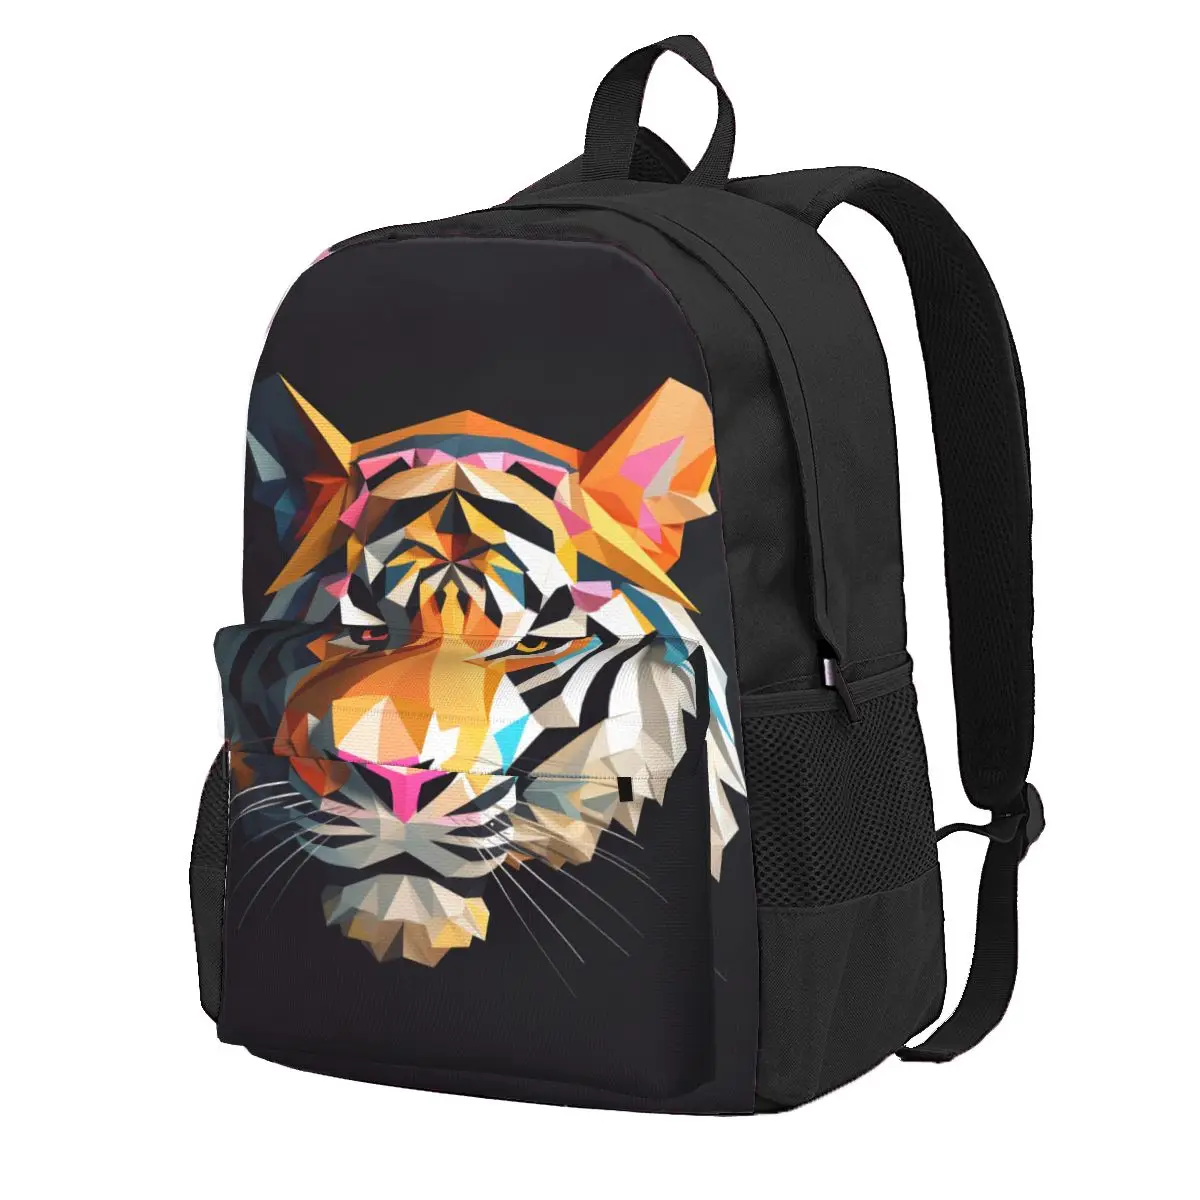 

Большой женский рюкзак с принтом тигра, полиэстеровый ранец с геометрическим рисунком, цветные школьные ранцы для улицы